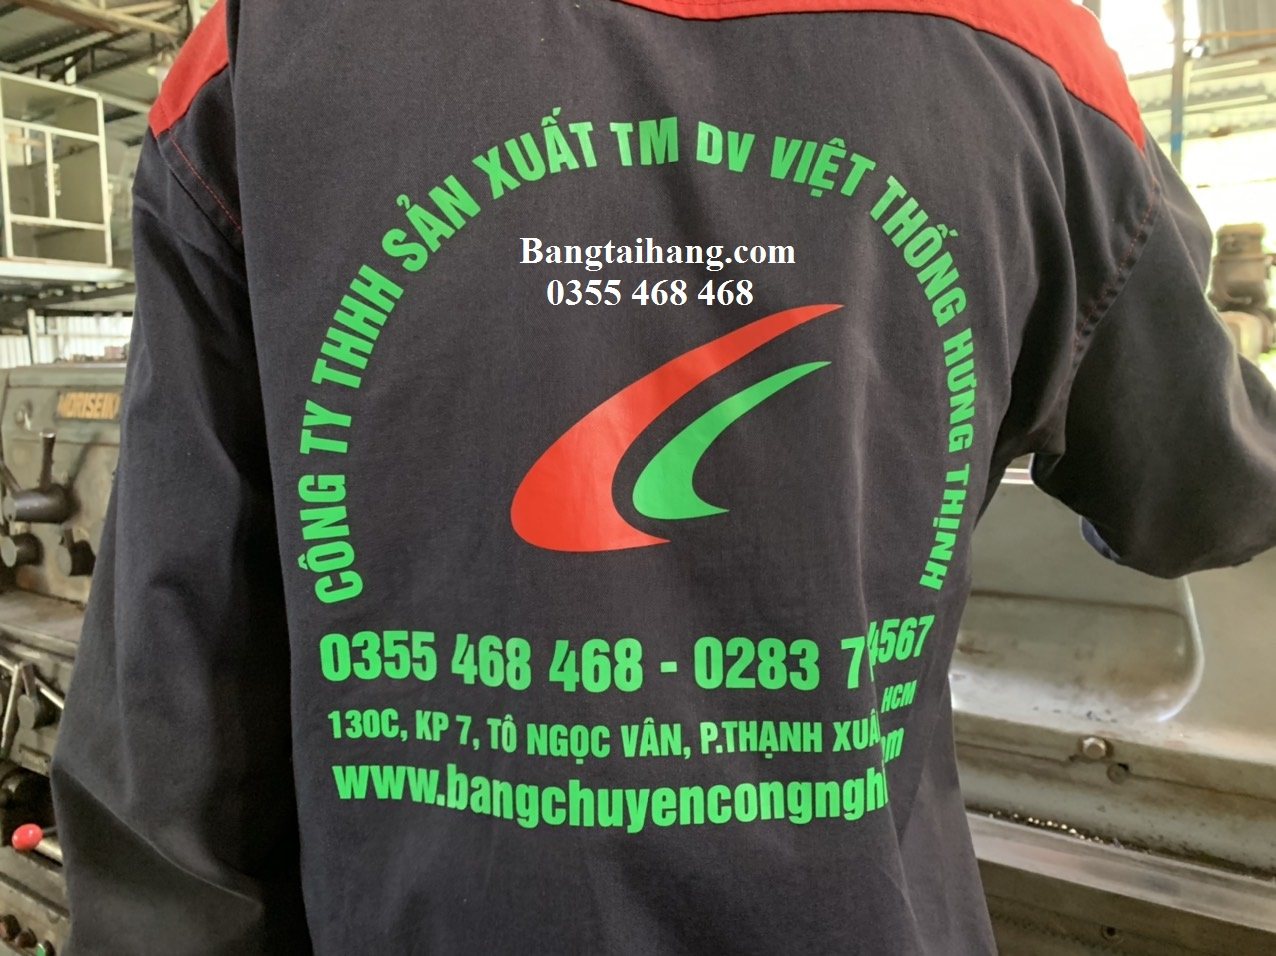 Các loại băng tải hàng hóa chất lượng tại Công ty Việt Thống